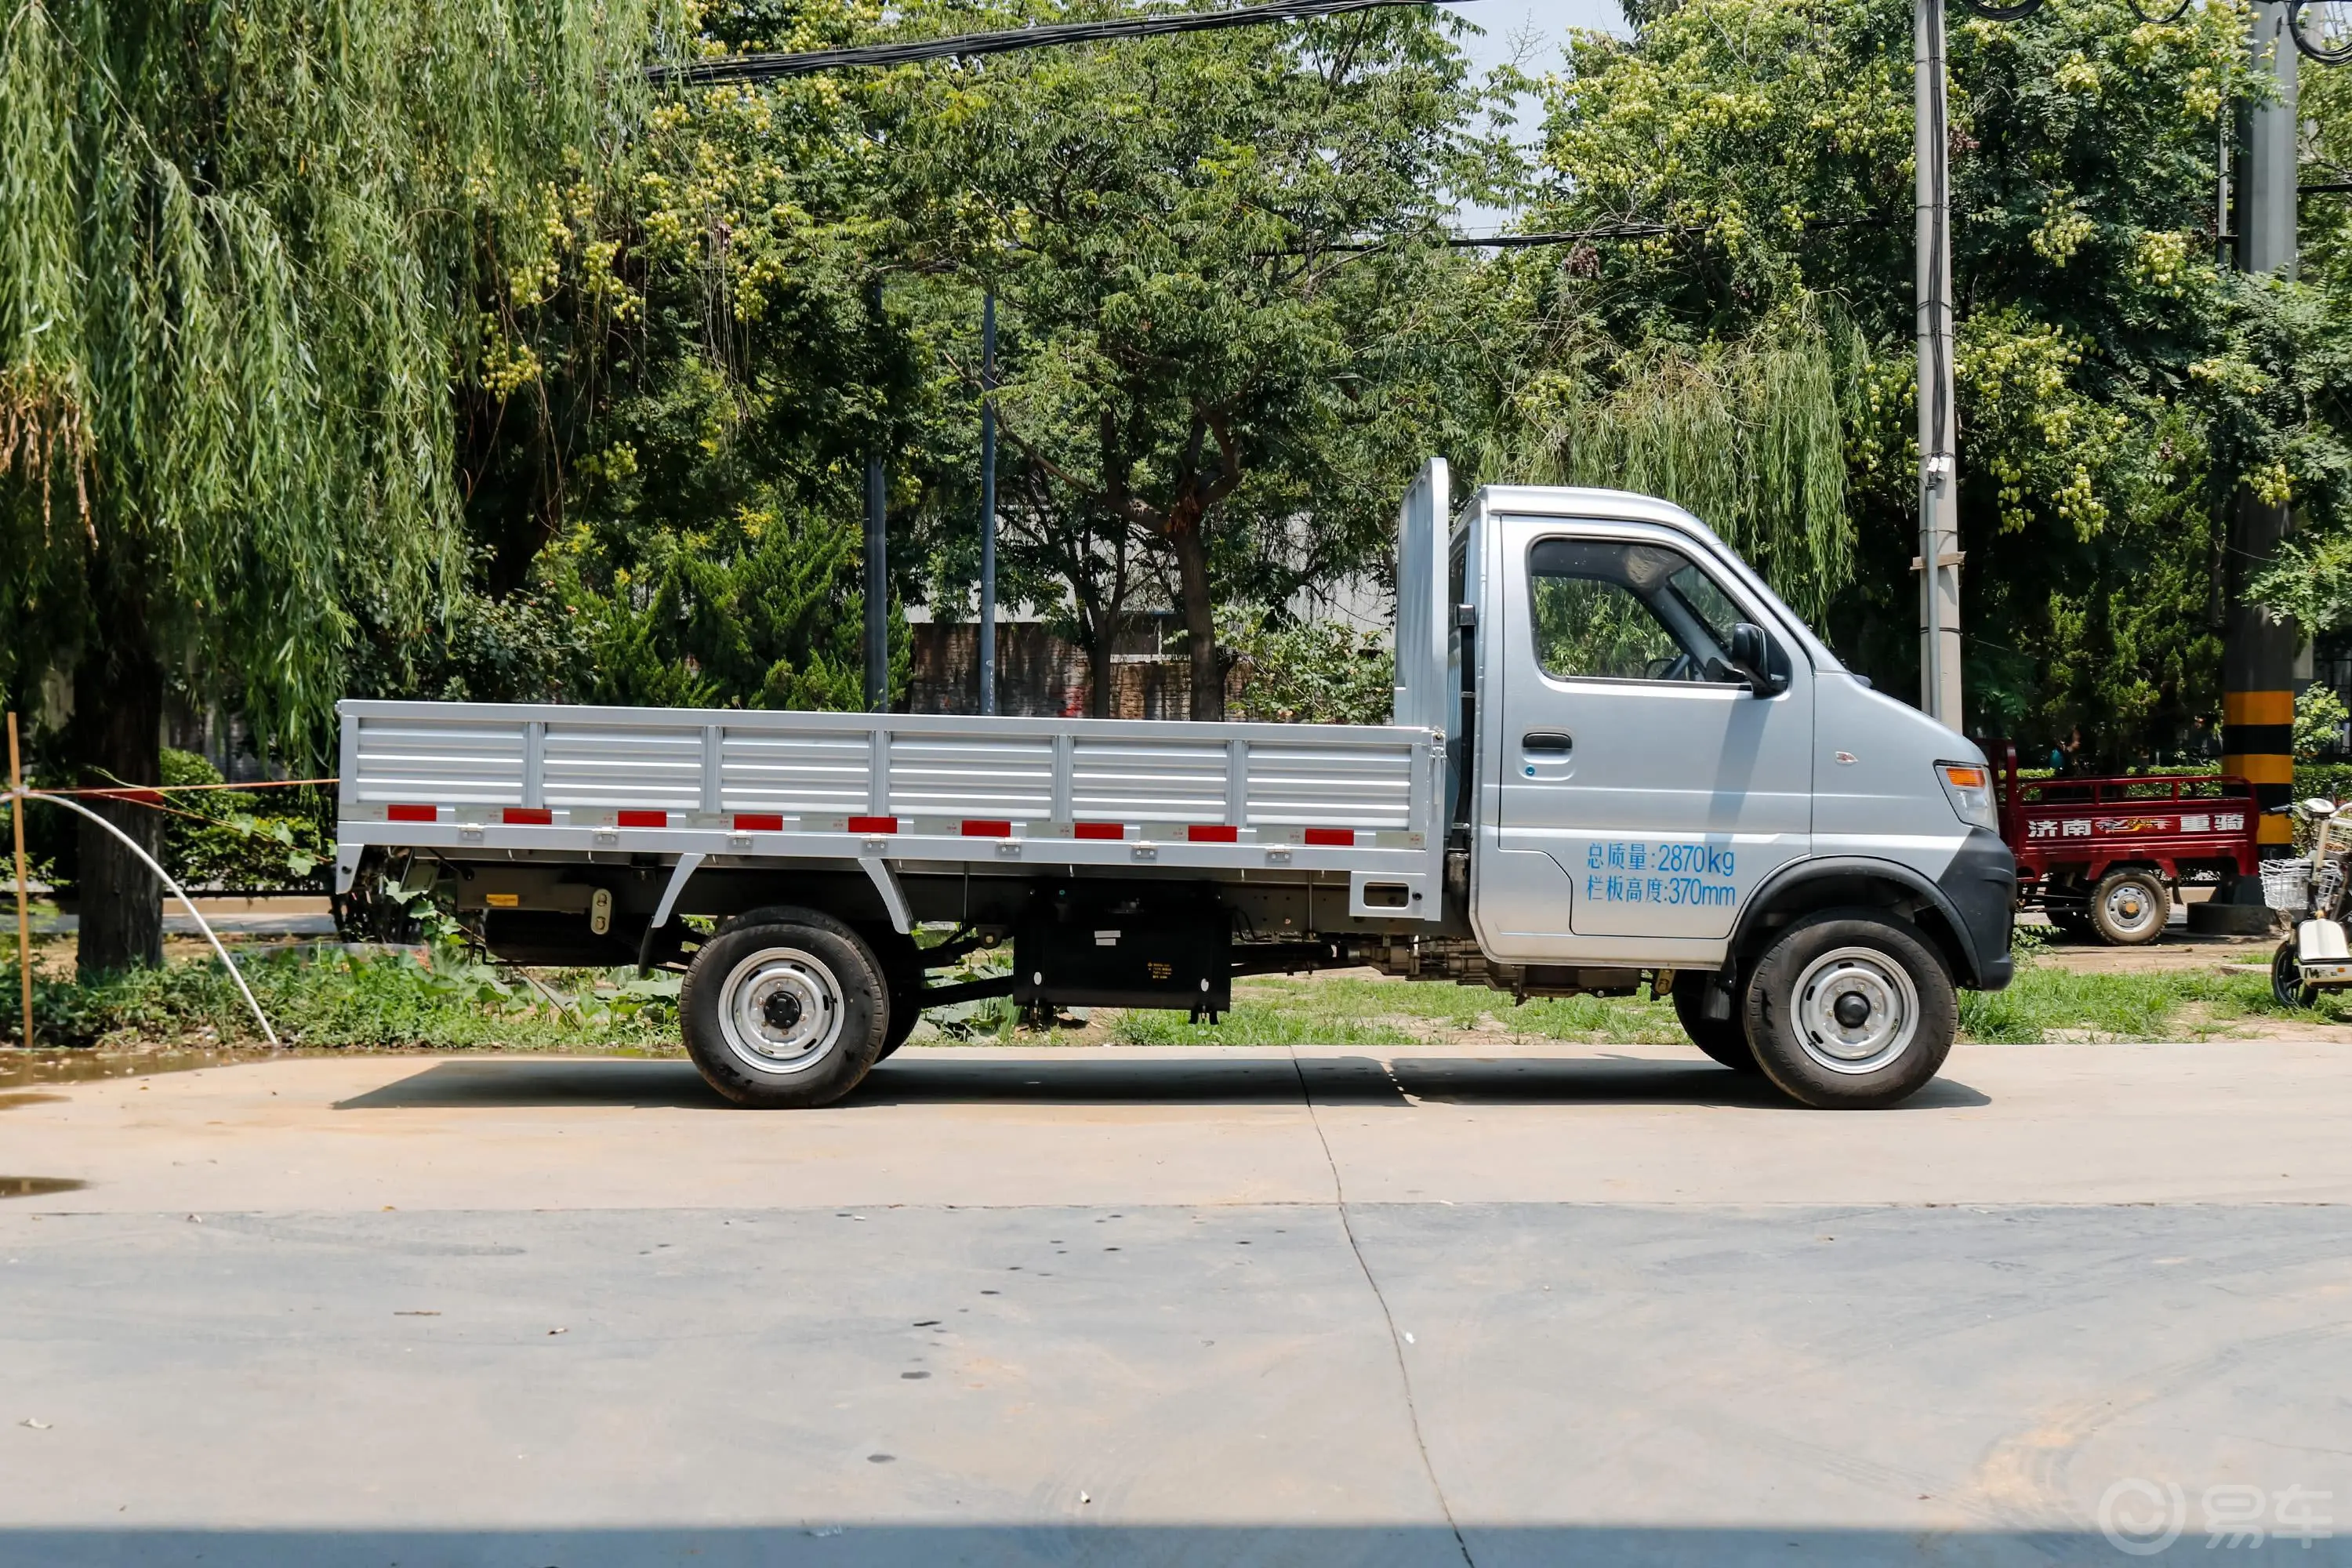 神骐T20T20L 载货车单排 1.5L 手动 舒适版 3.6米货箱正侧车头向右水平